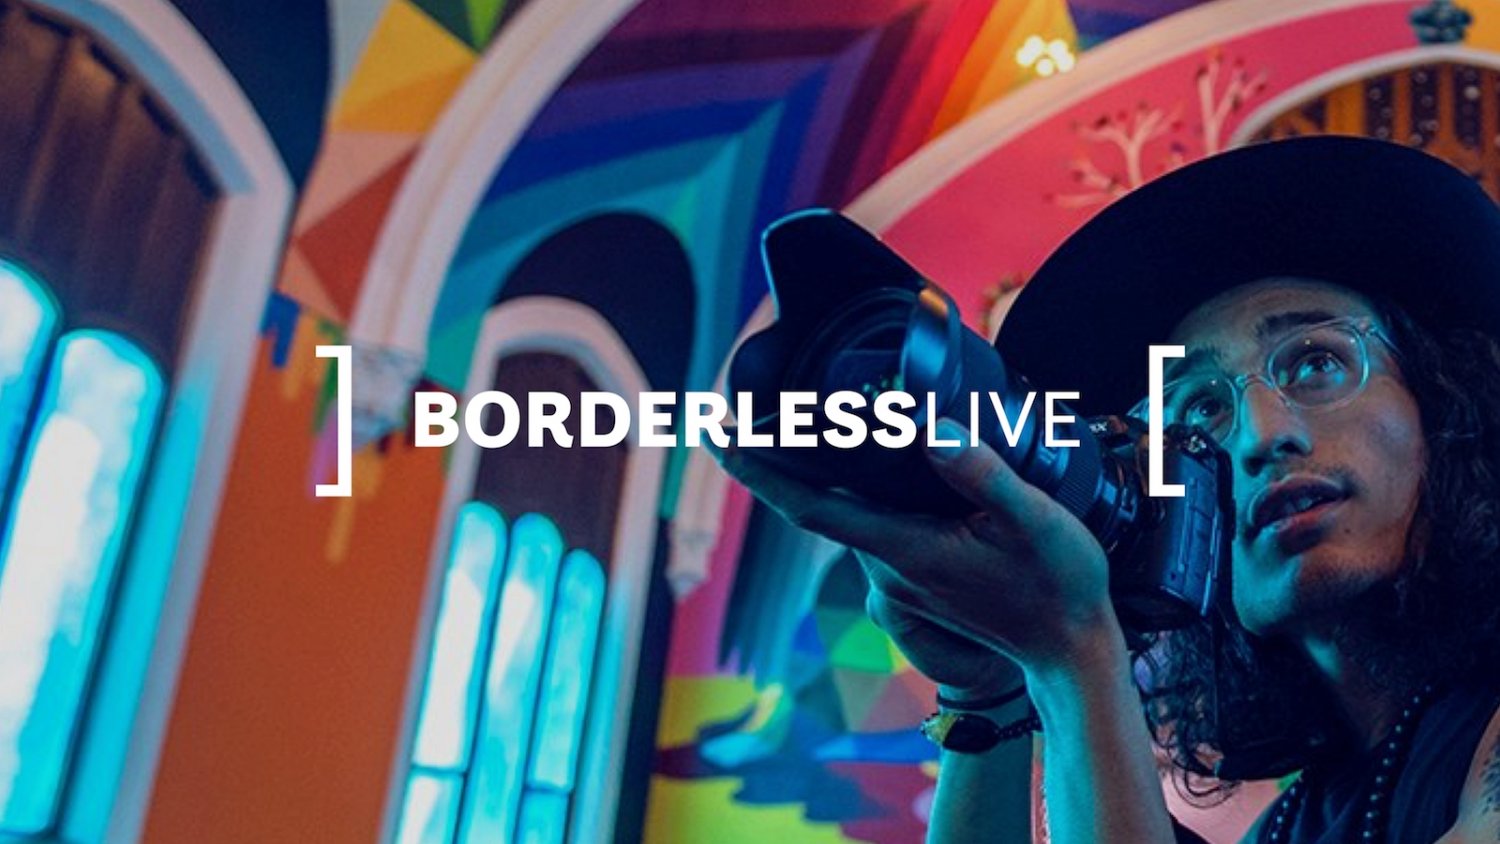 Andalucía participa por primera vez en la feria Borderless Live a la que asistirán más de 3.000 ‘influencers’ del Reino Unido